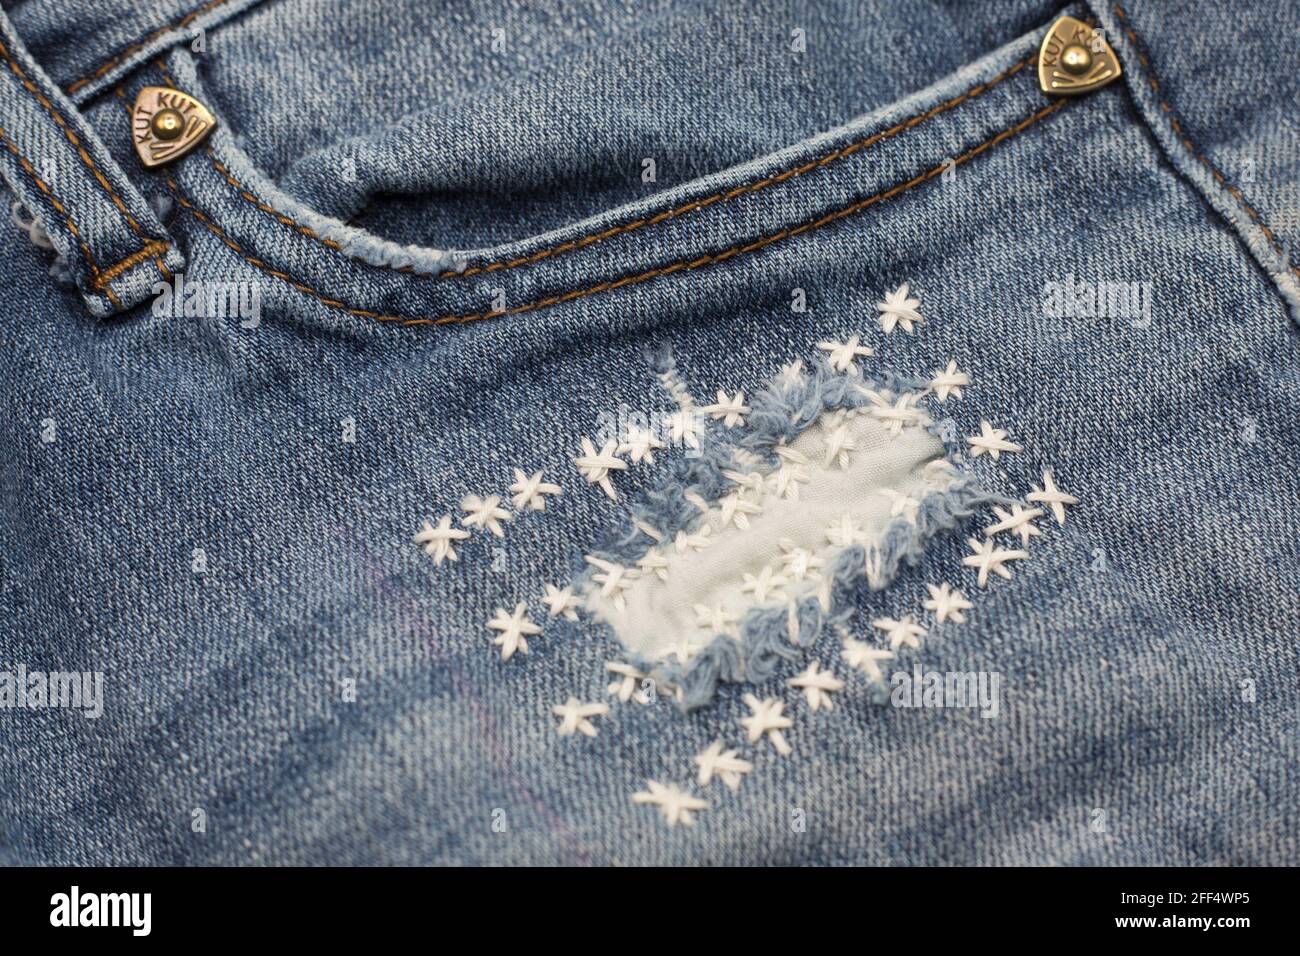 Jeans mit einem Loch, das schlampig mit gestickten Sternen geflickt wurde  Stockfotografie - Alamy